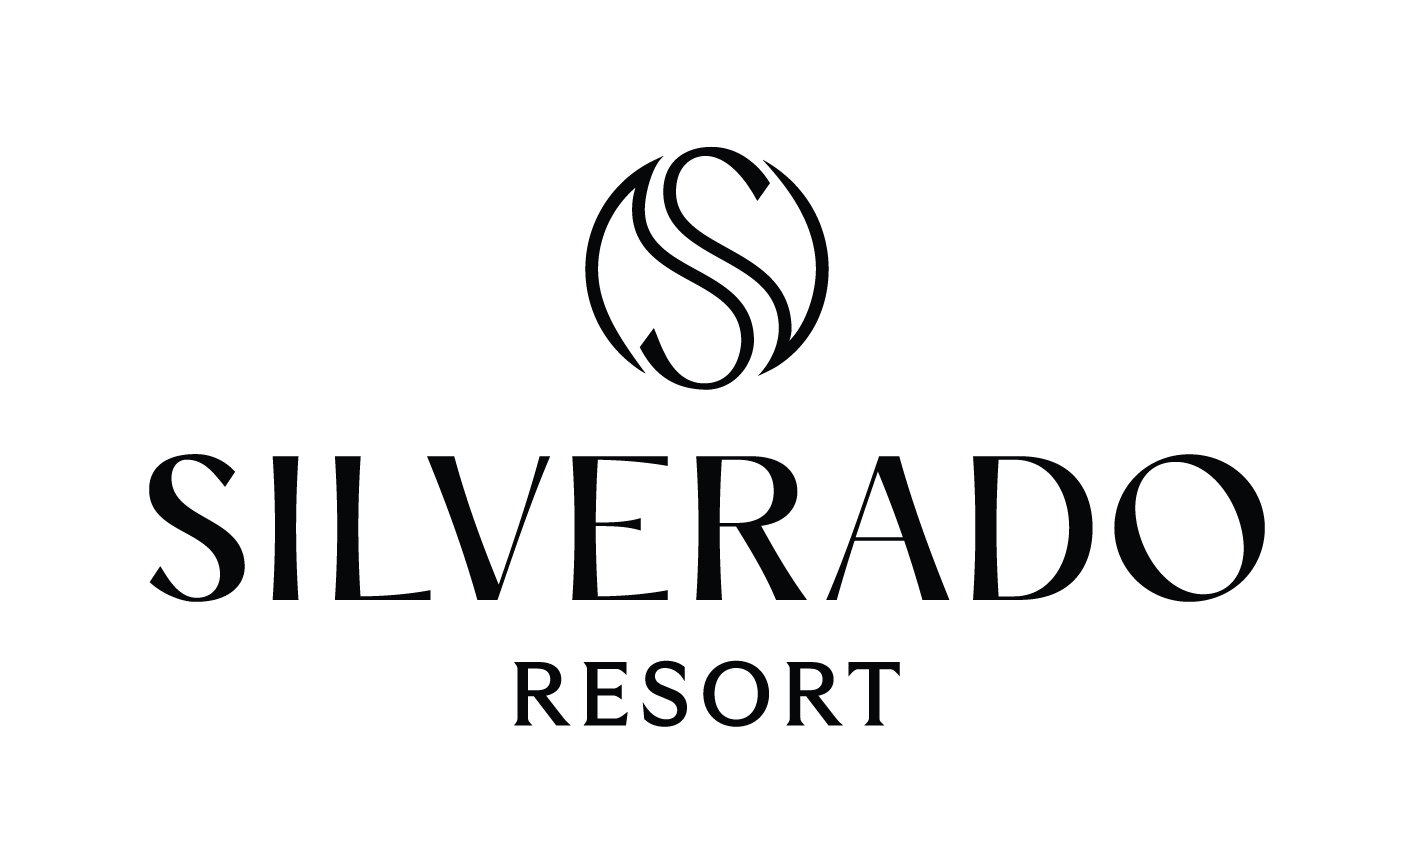 Silverado Resort Events